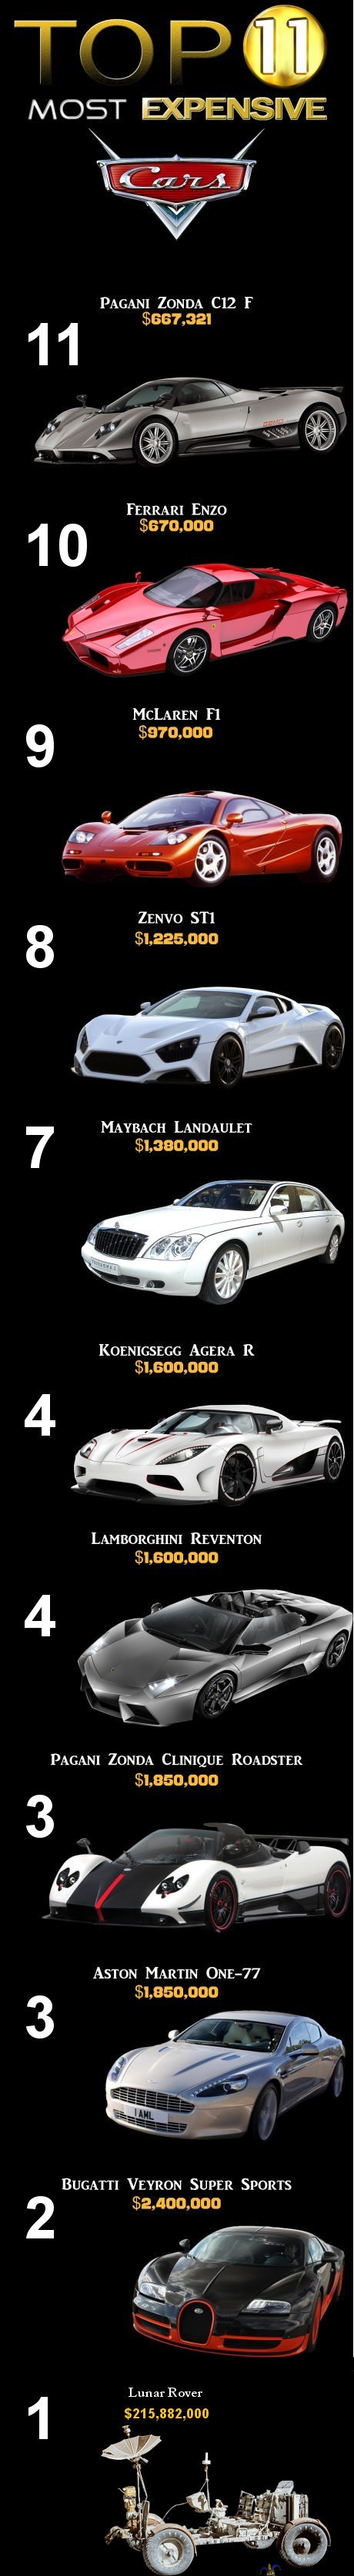 Vauhtihirmu. - Top 11 most expensive!